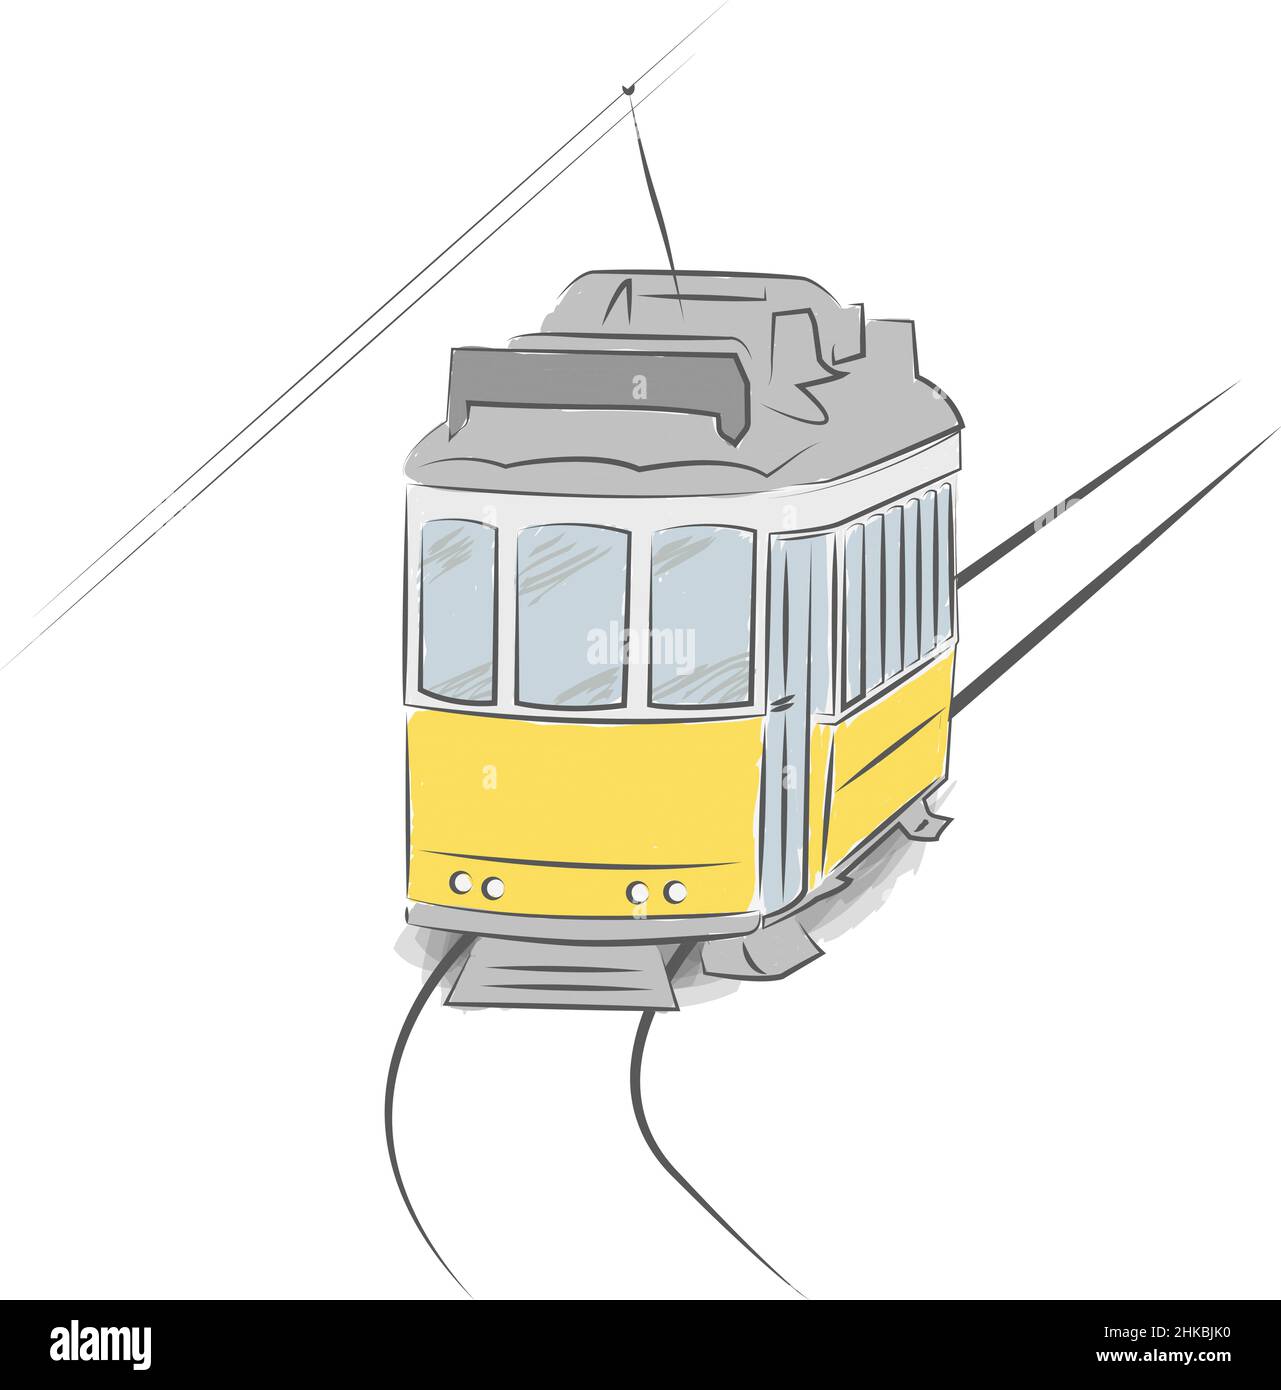 tipico tram di lisbona disegnato a mano isolato su sfondo bianco, illustrazione vettoriale Illustrazione Vettoriale